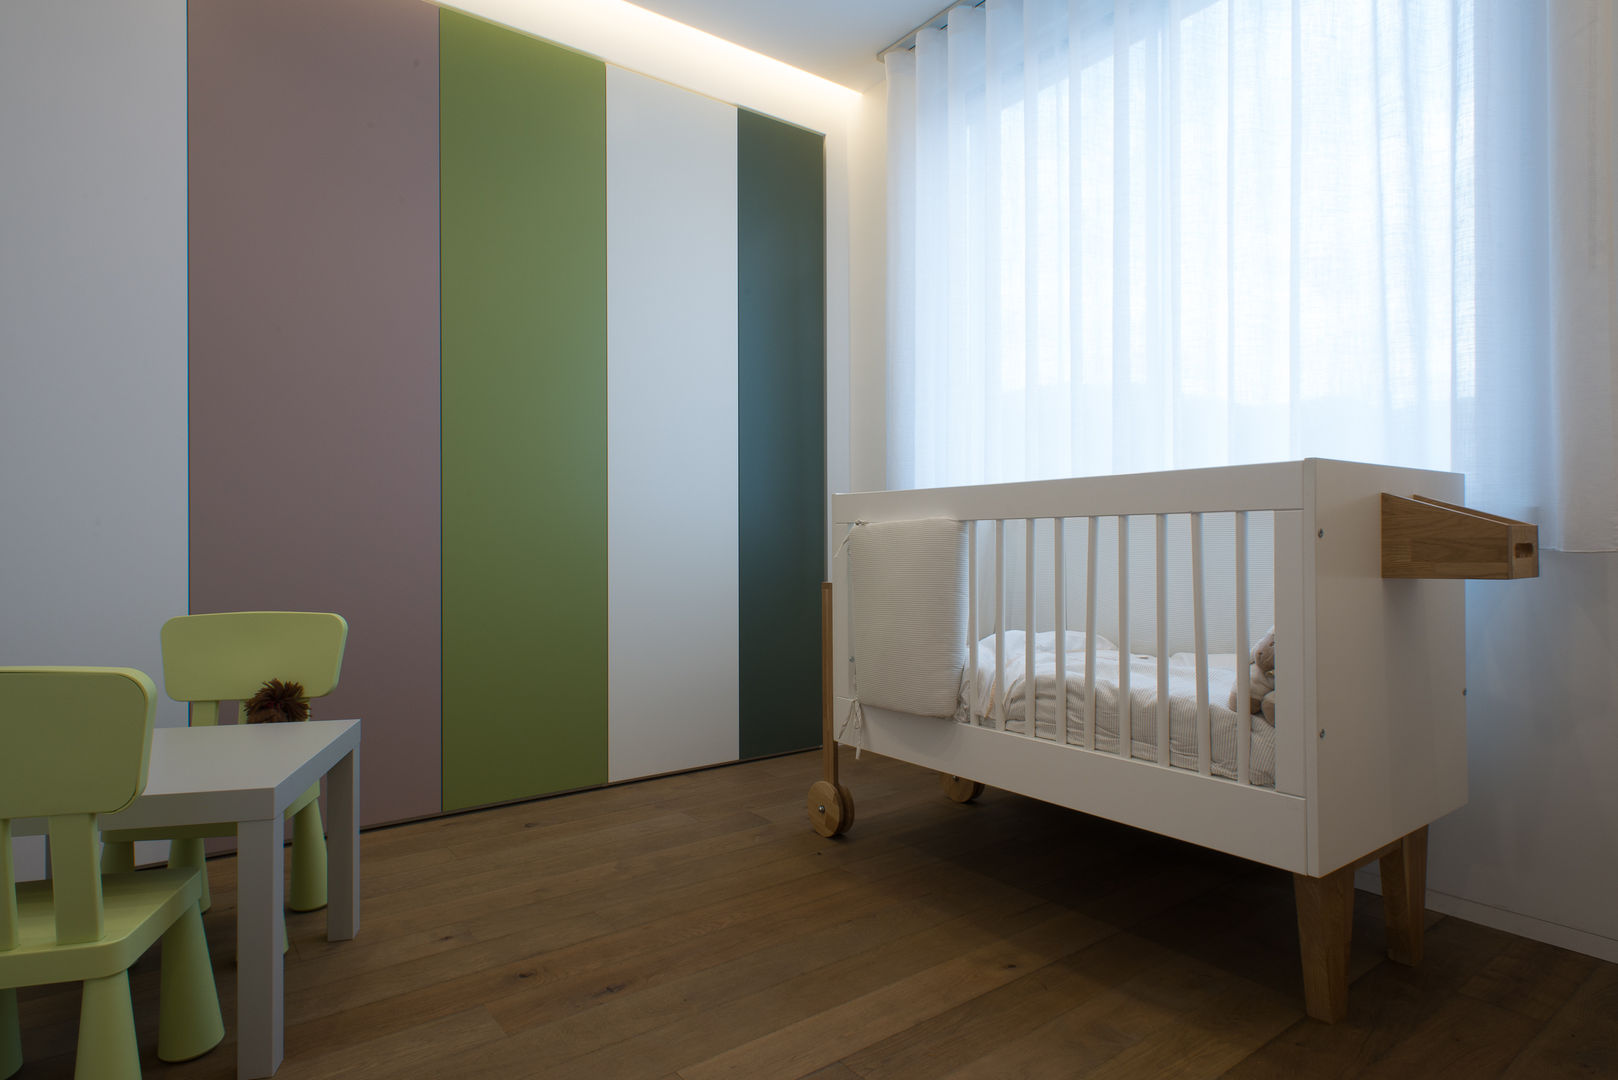 Percorsi di luce, Mario Ferrara Mario Ferrara Dormitorios infantiles modernos: